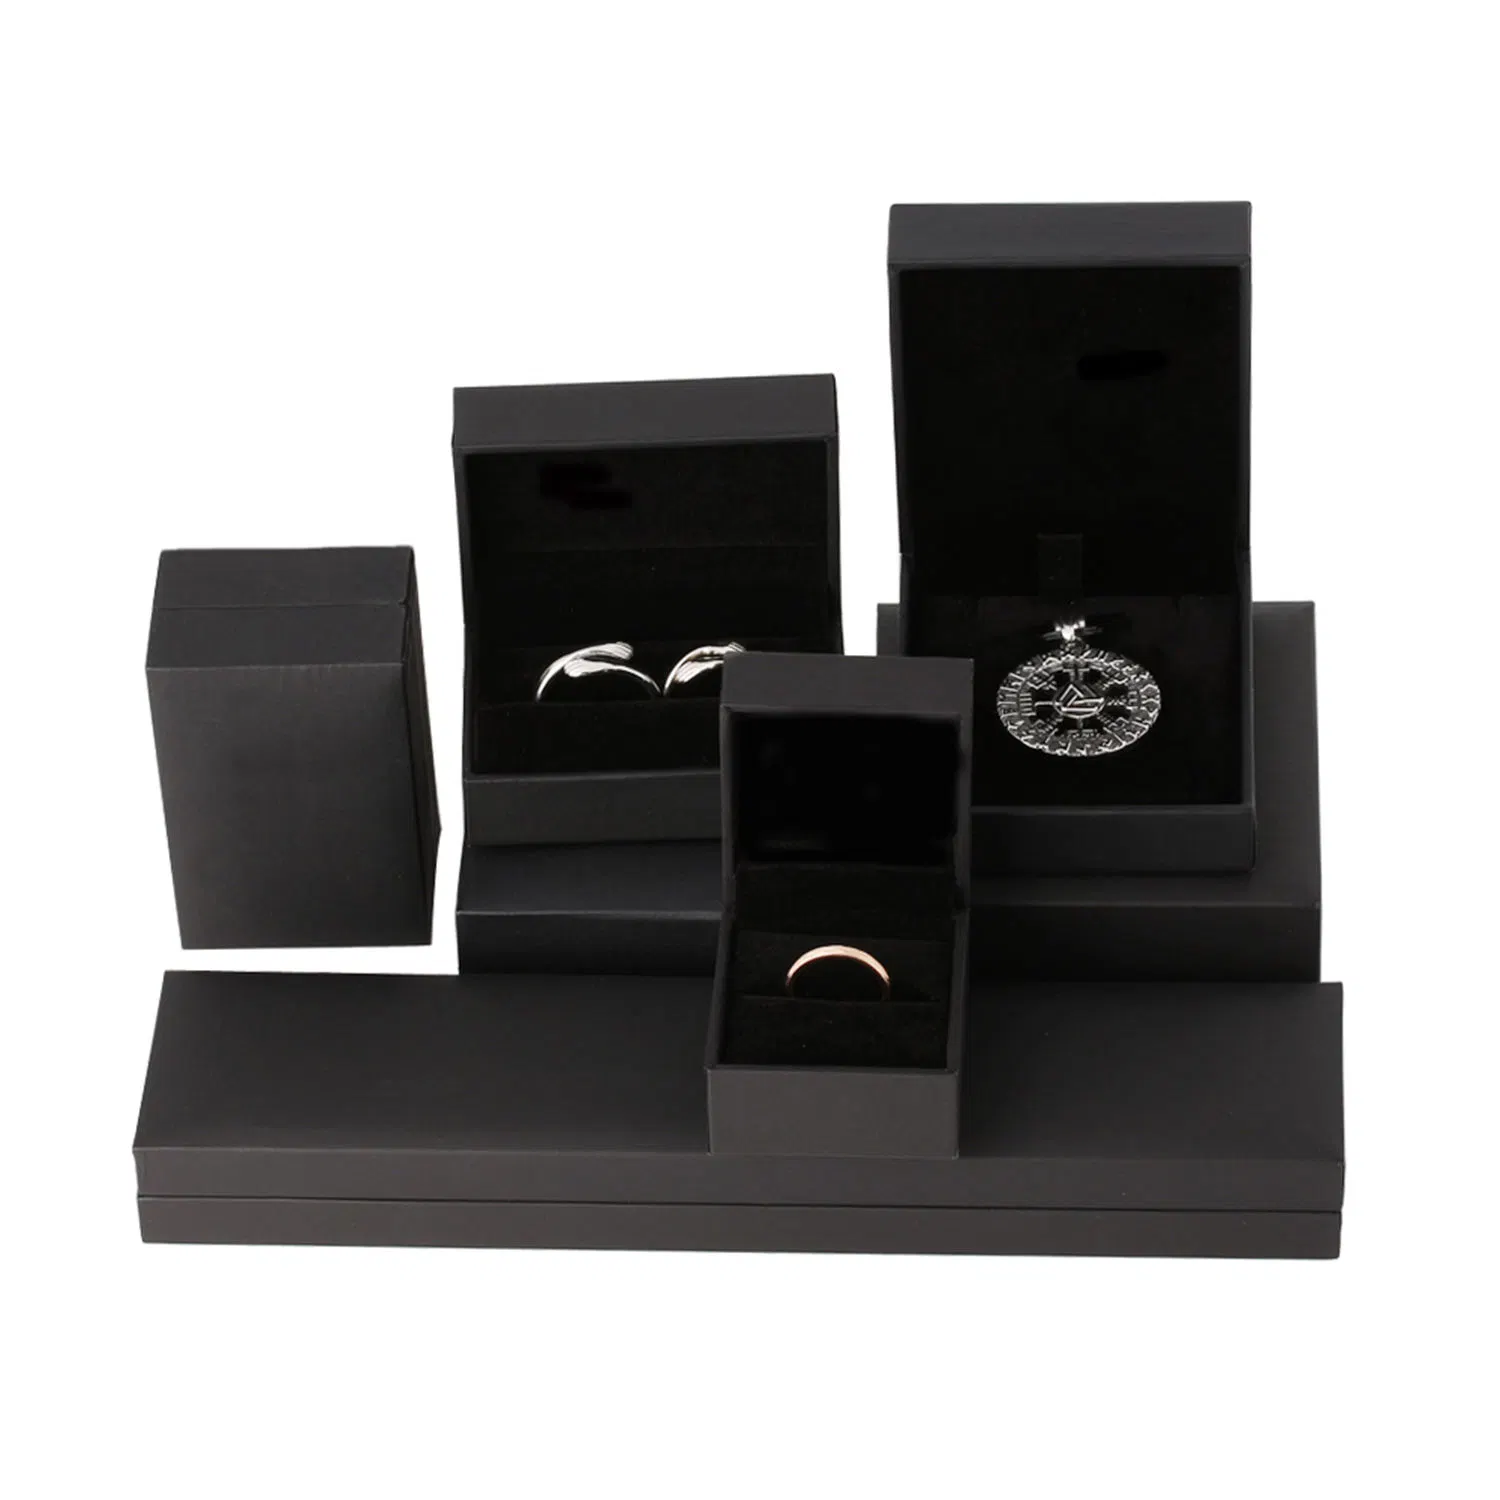 Boîte à bijoux en papier simili cuir noir en gros pour boucle d'oreille / bracelet / bague / pendentif / emballage de bijoux